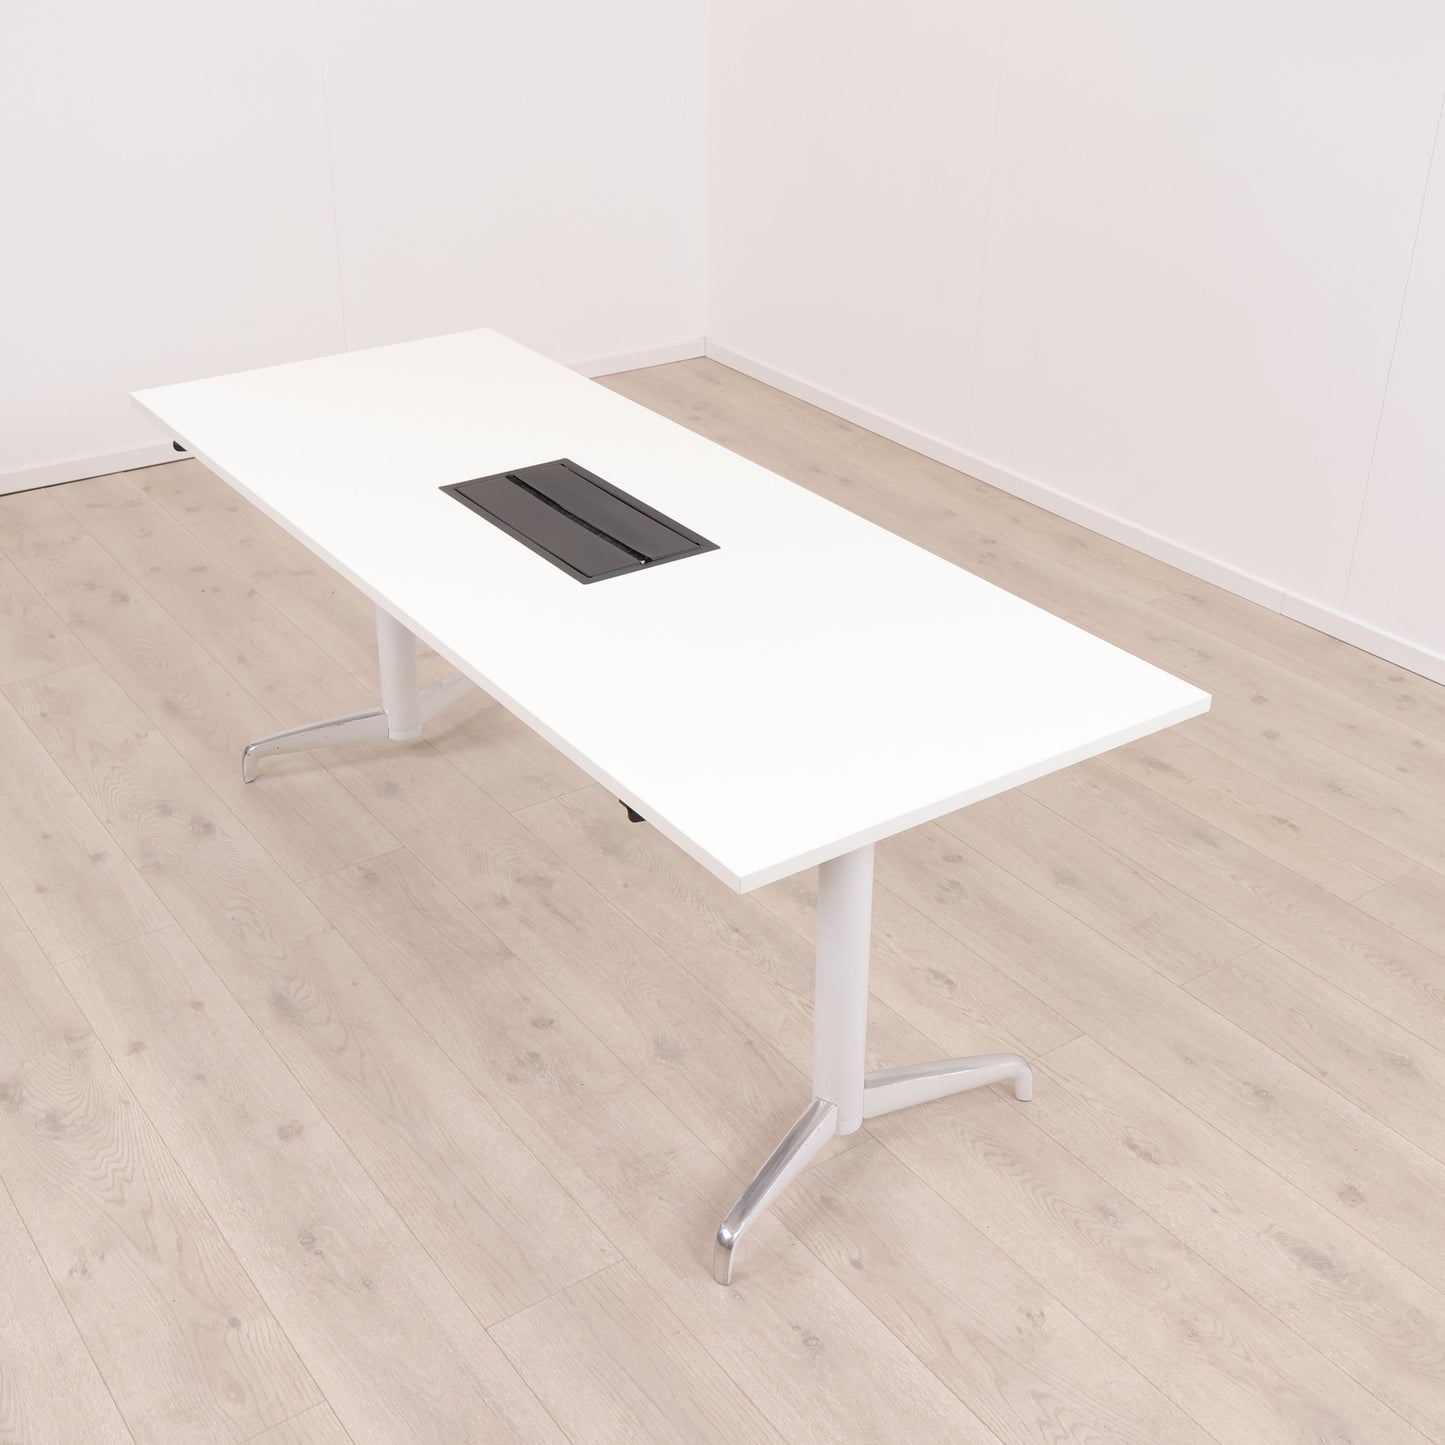 Kvalitetssikret | 180x70 cm, Hvitt møtebord med sort kabelluke og mulighet for strømtilkobling